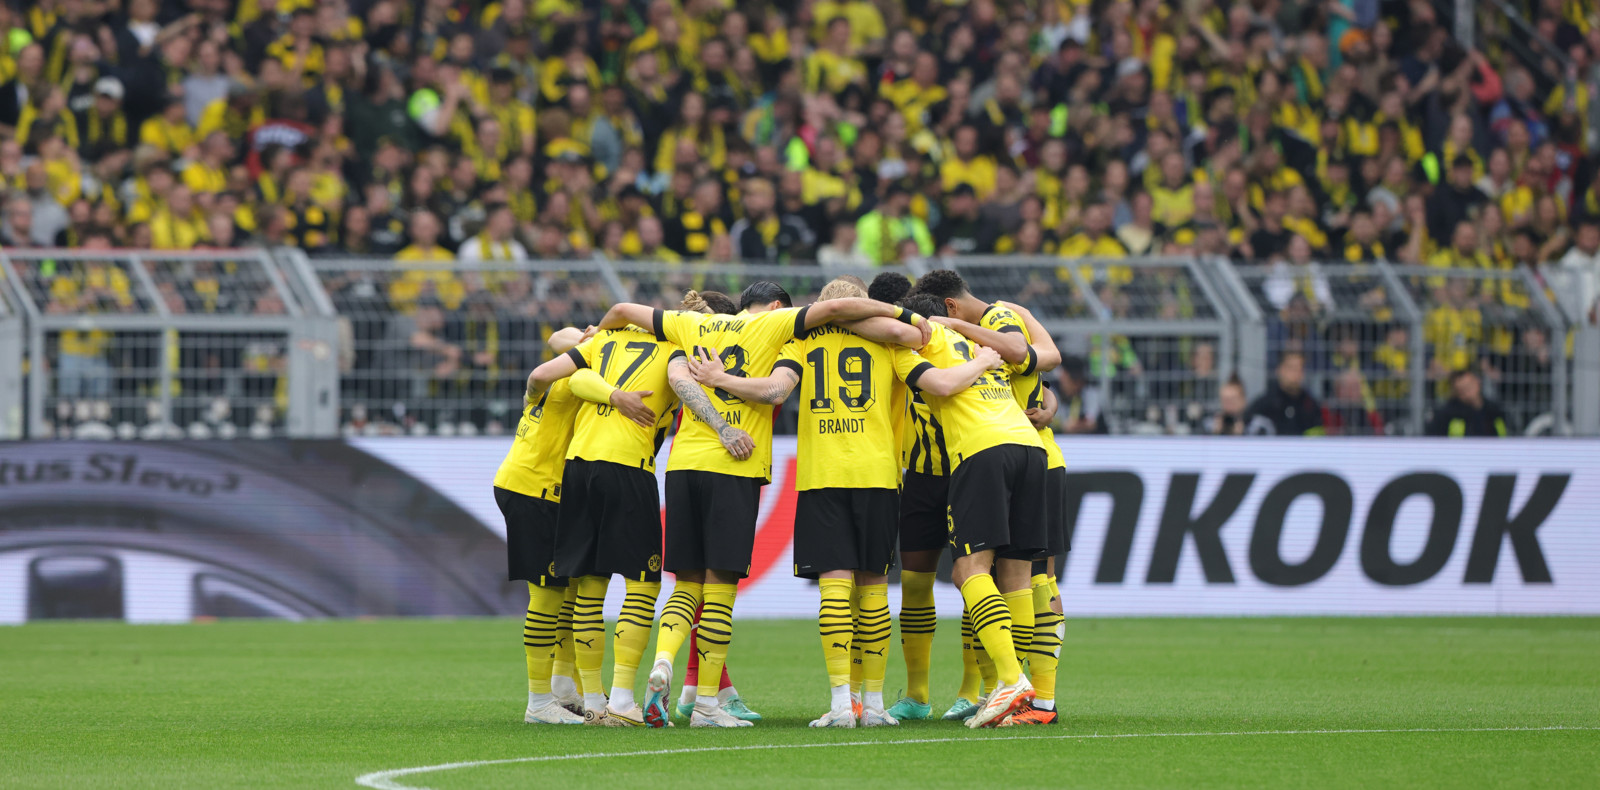 Hankook und BV Borussia Dortmund gehen gemeinsam in die 13. Saison